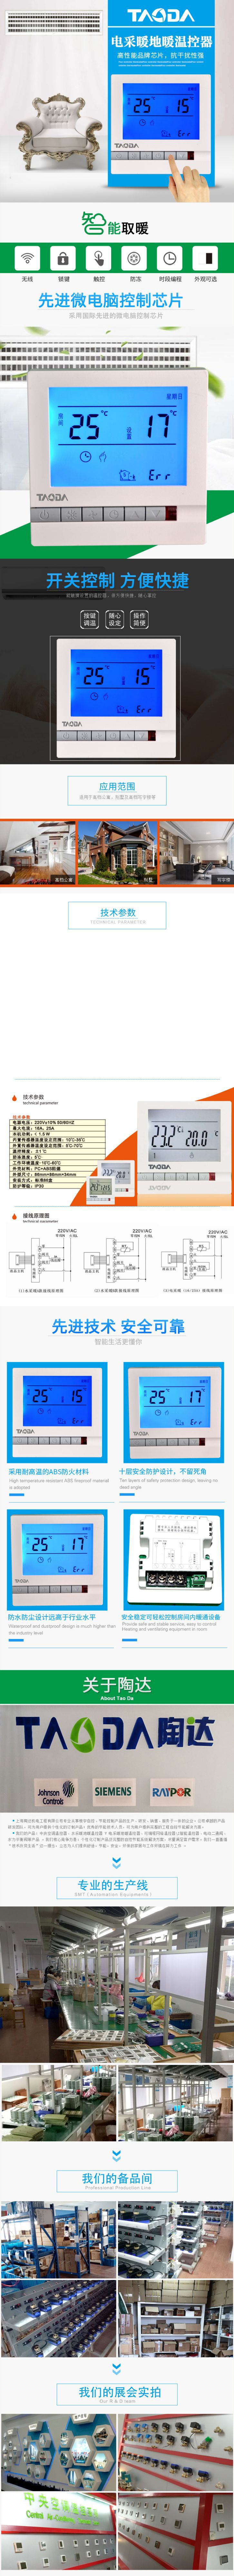 地暖温控器 电地暖温控器5500W 电暖温控器 电地暖控制器25A示例图1